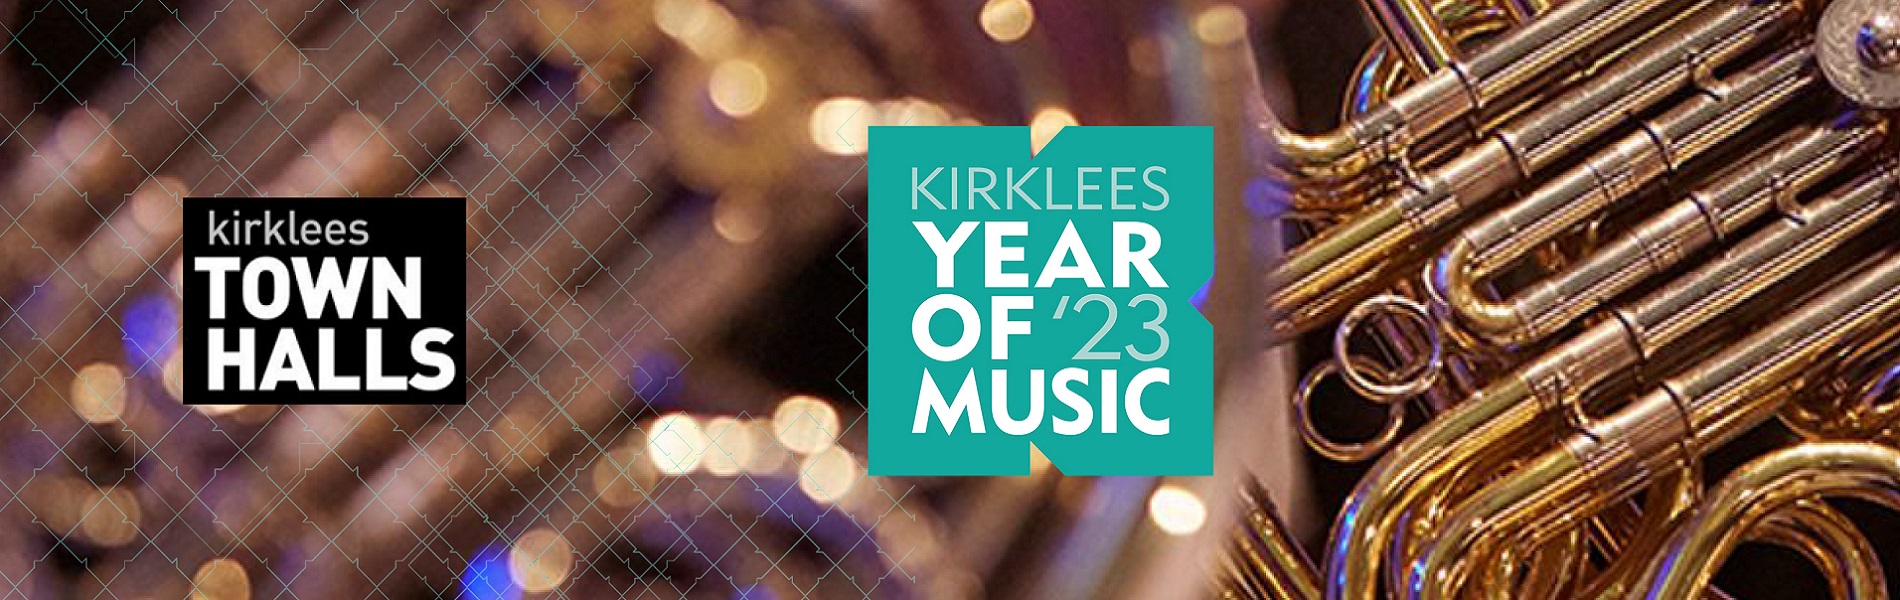 Kirklees Year of 23 Music